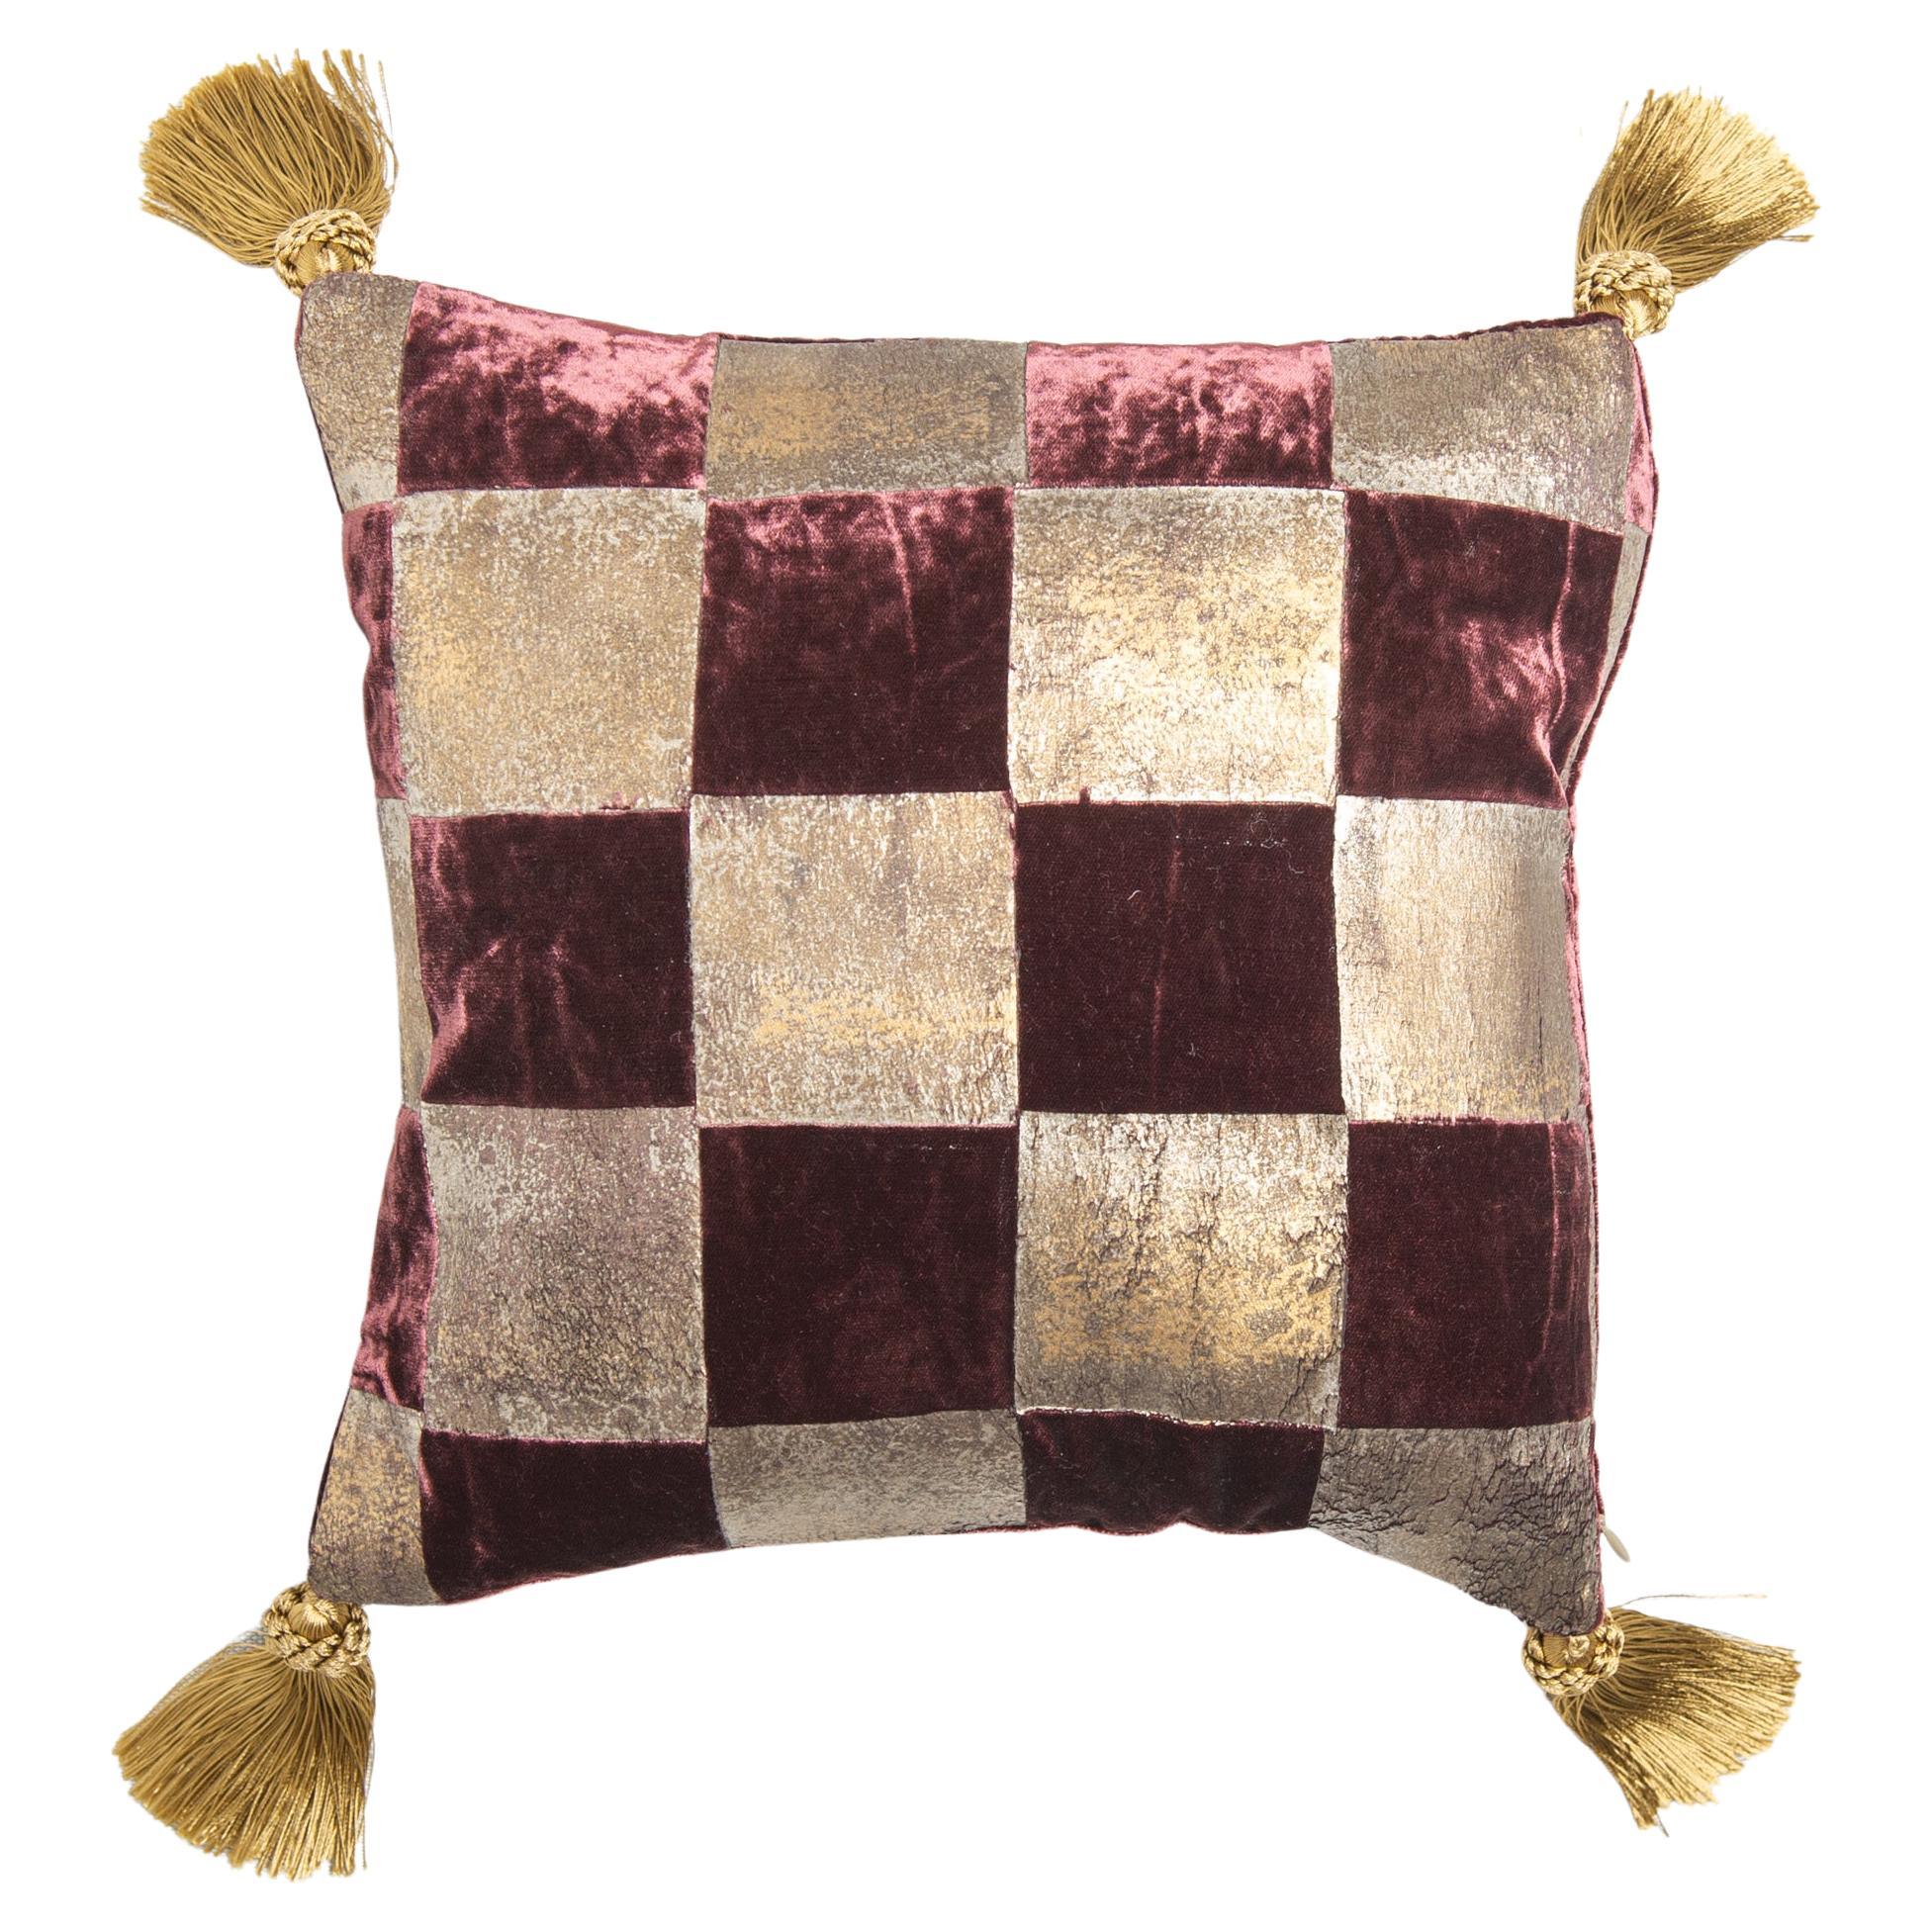  Pillow in Plum-Colored Elegant  Signed Velvet For Sale